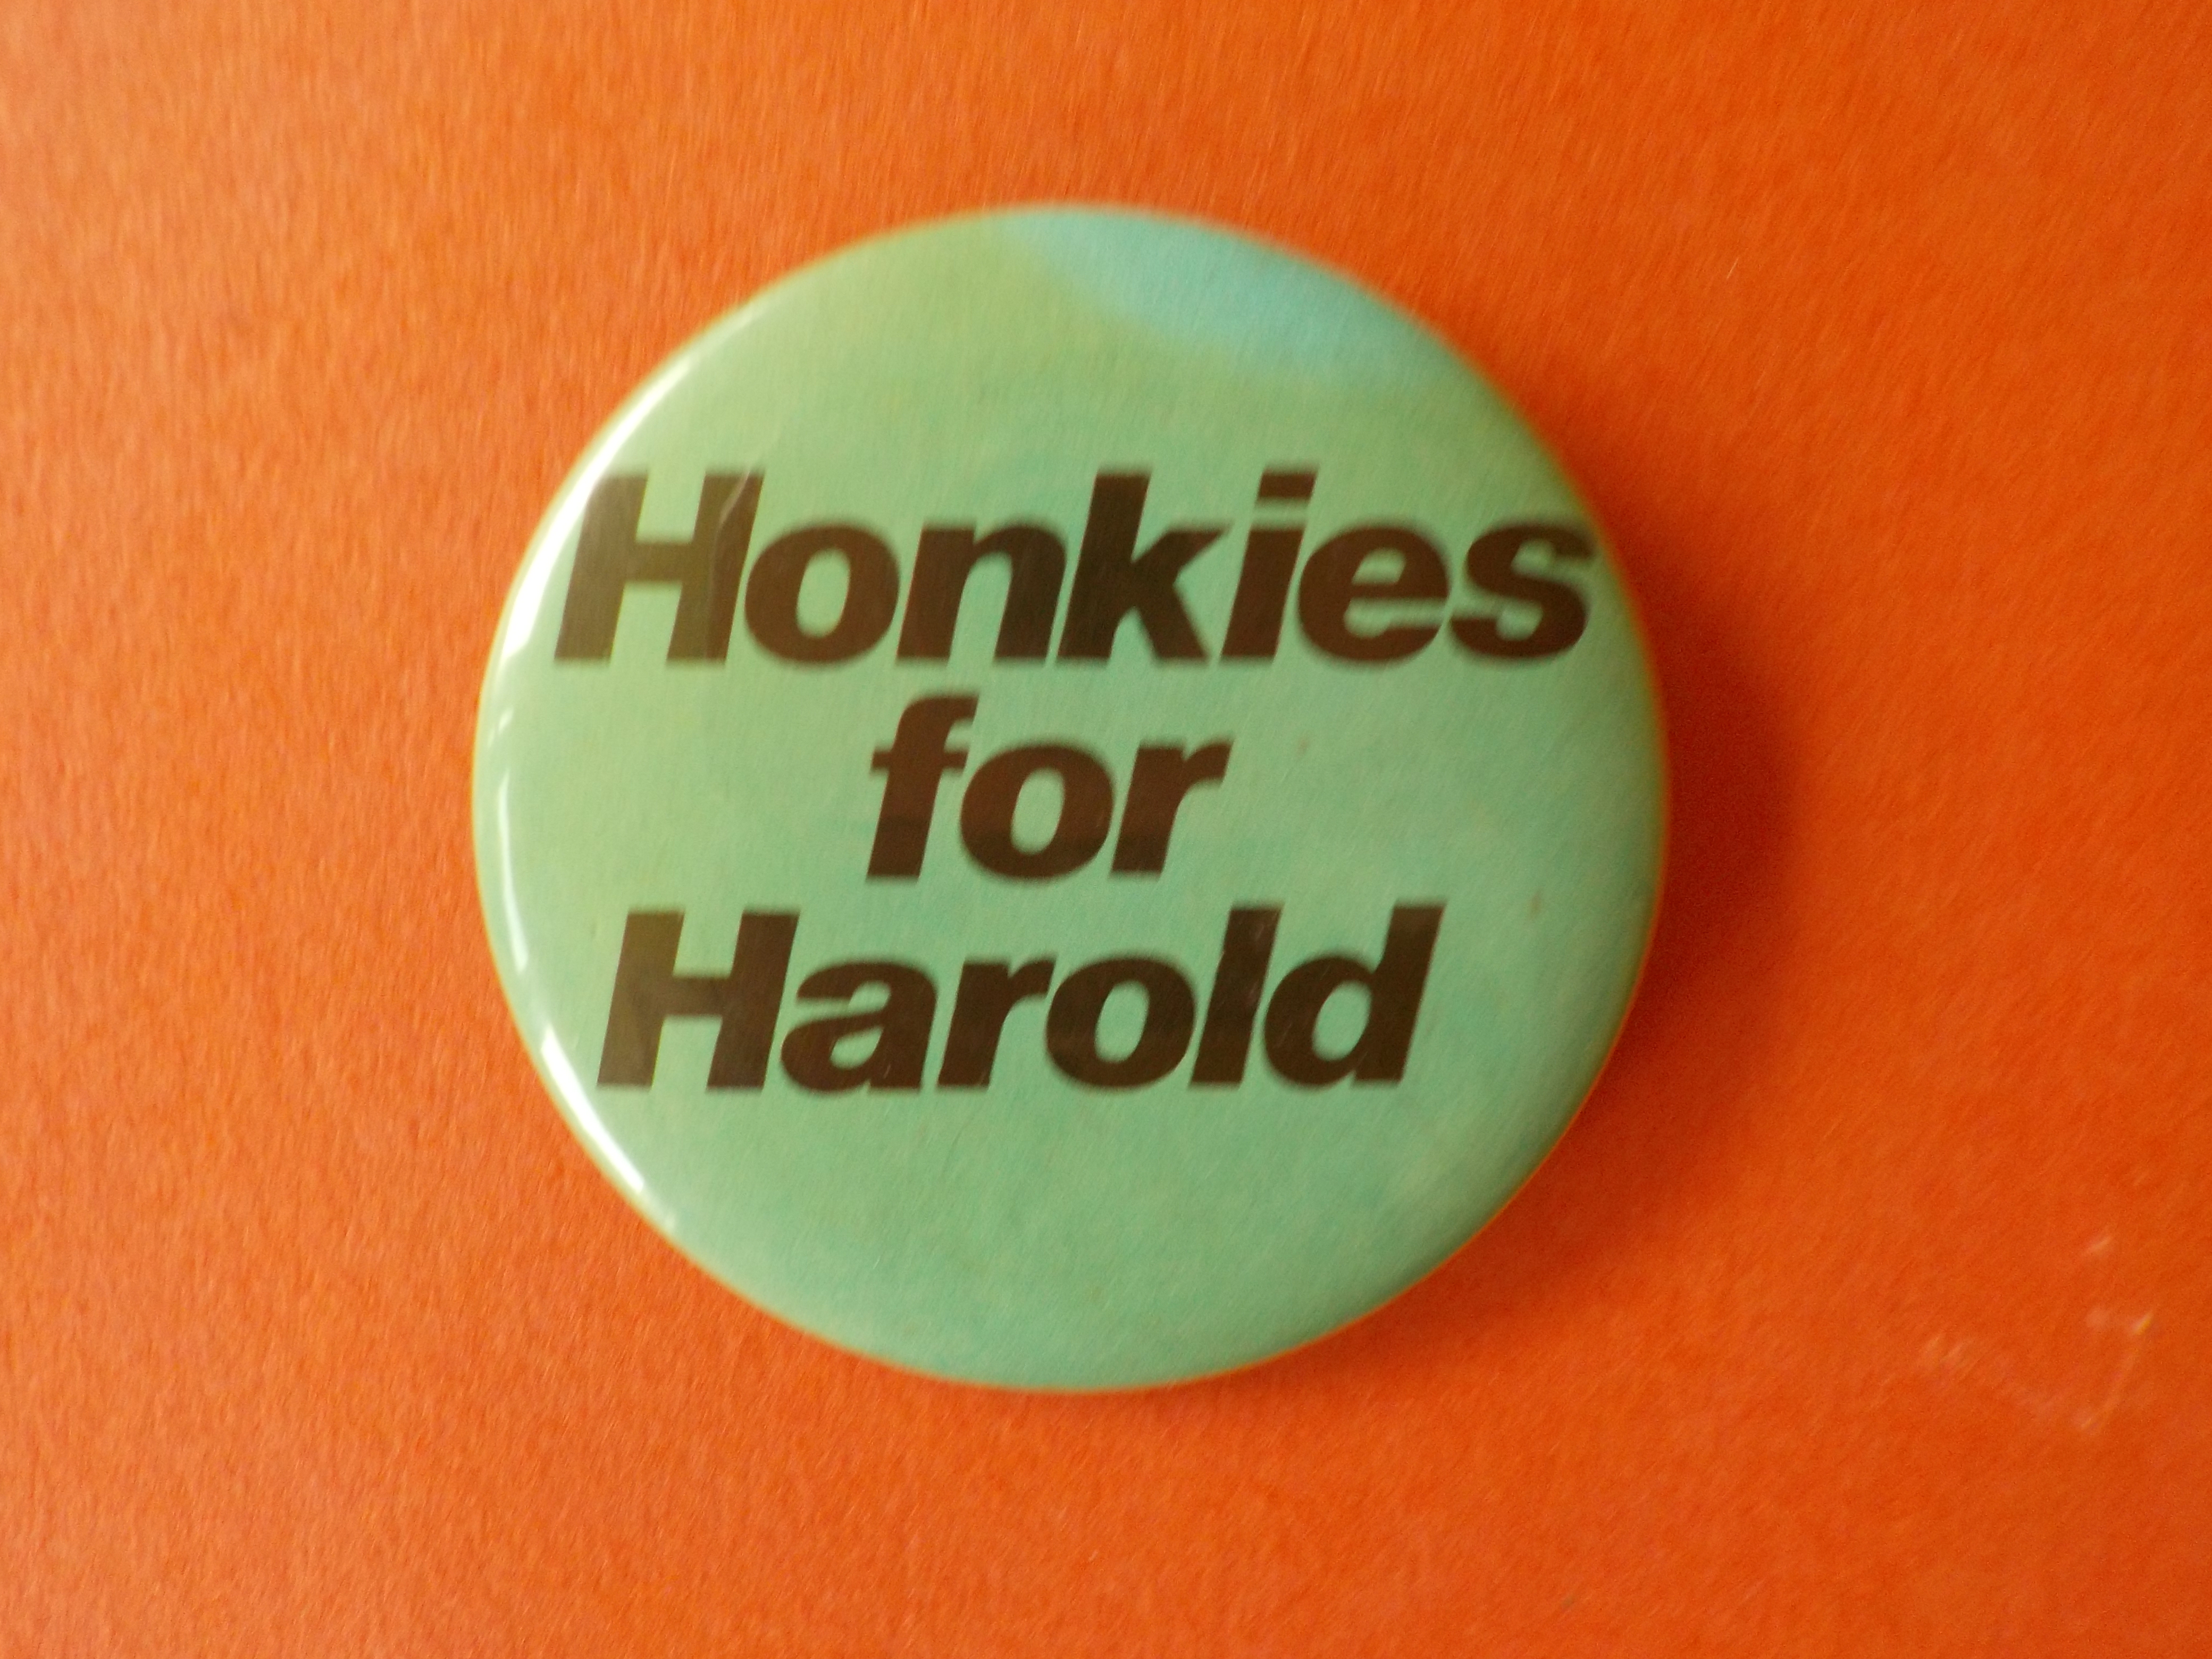 Honkies for Harold